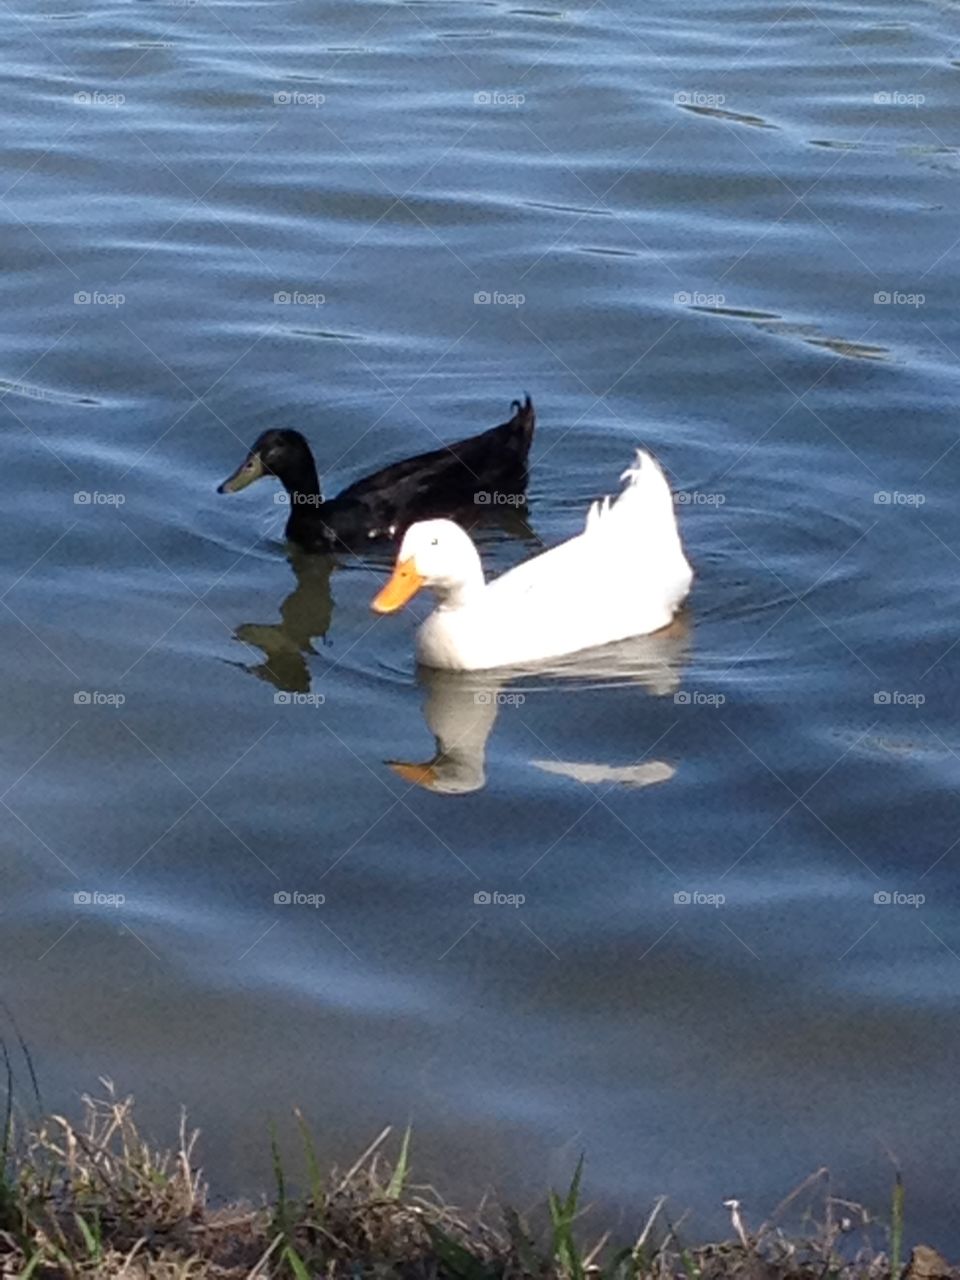 Ducks on blue lake lake water